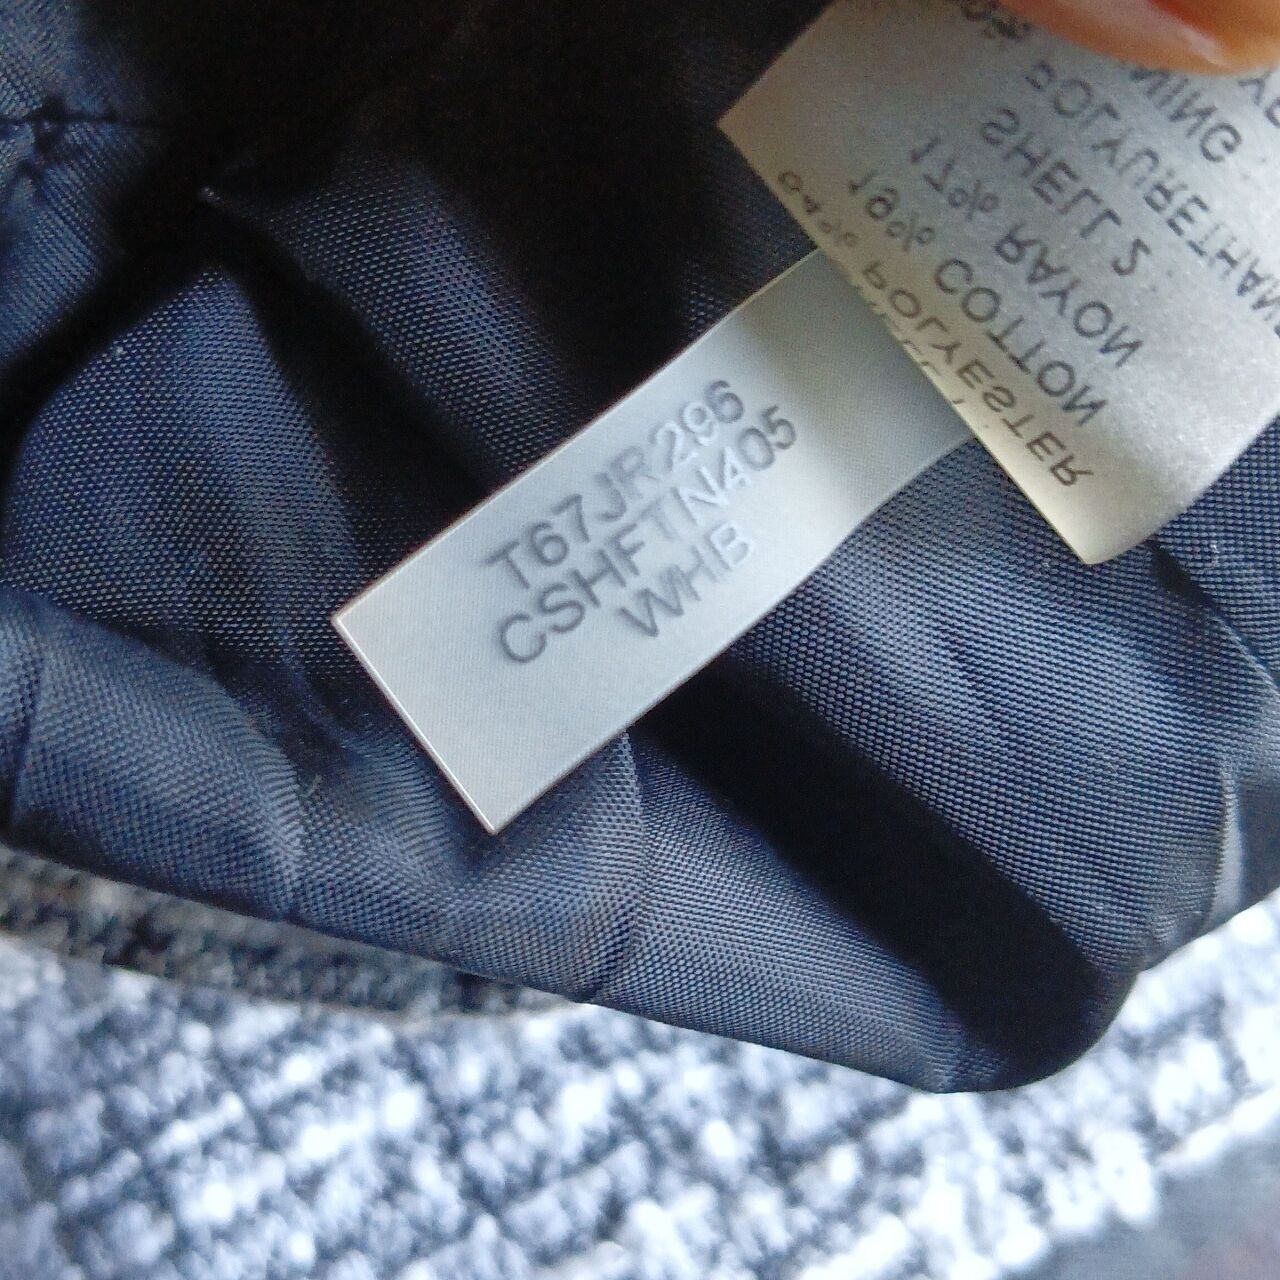 Calvin Klein Grey Zip Up Jacket